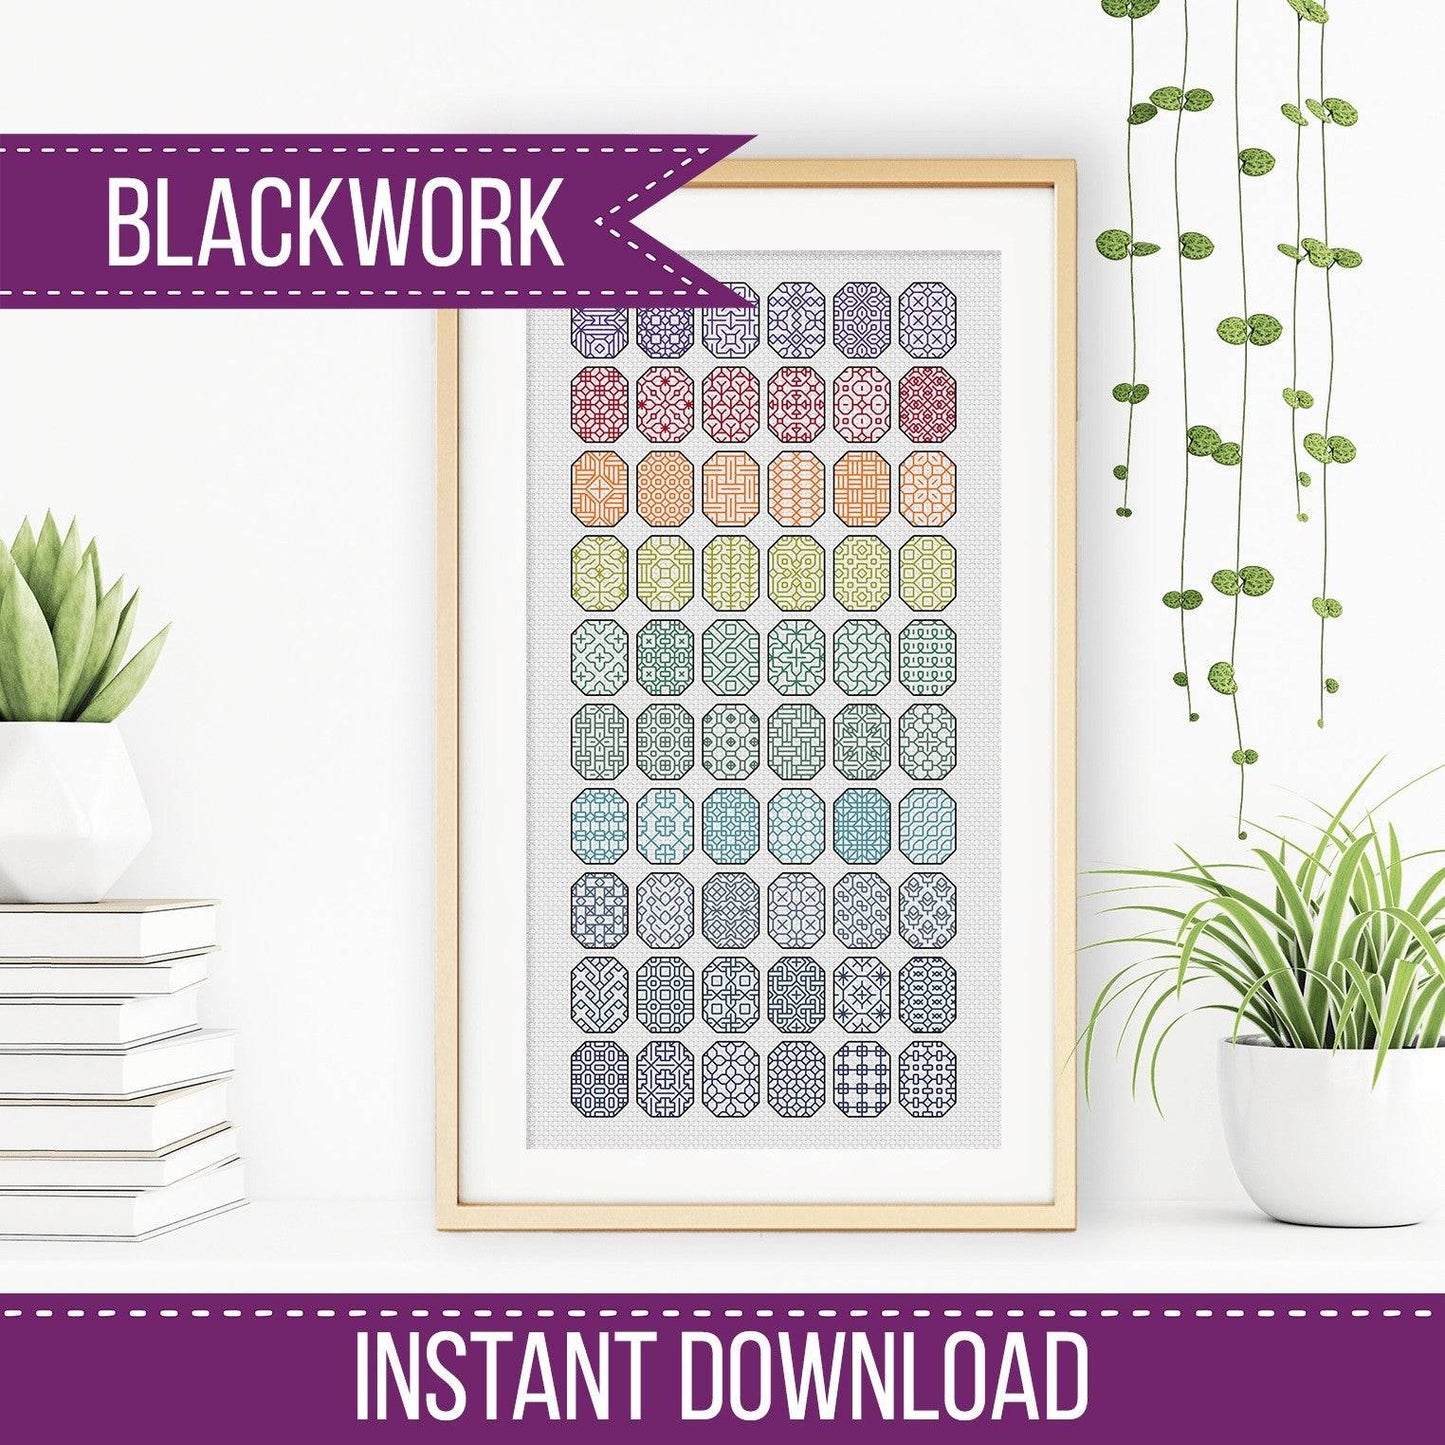 Blackwork Oval-tastic - Blackwork Patterns & Cross Stitch by Peppermint Purple